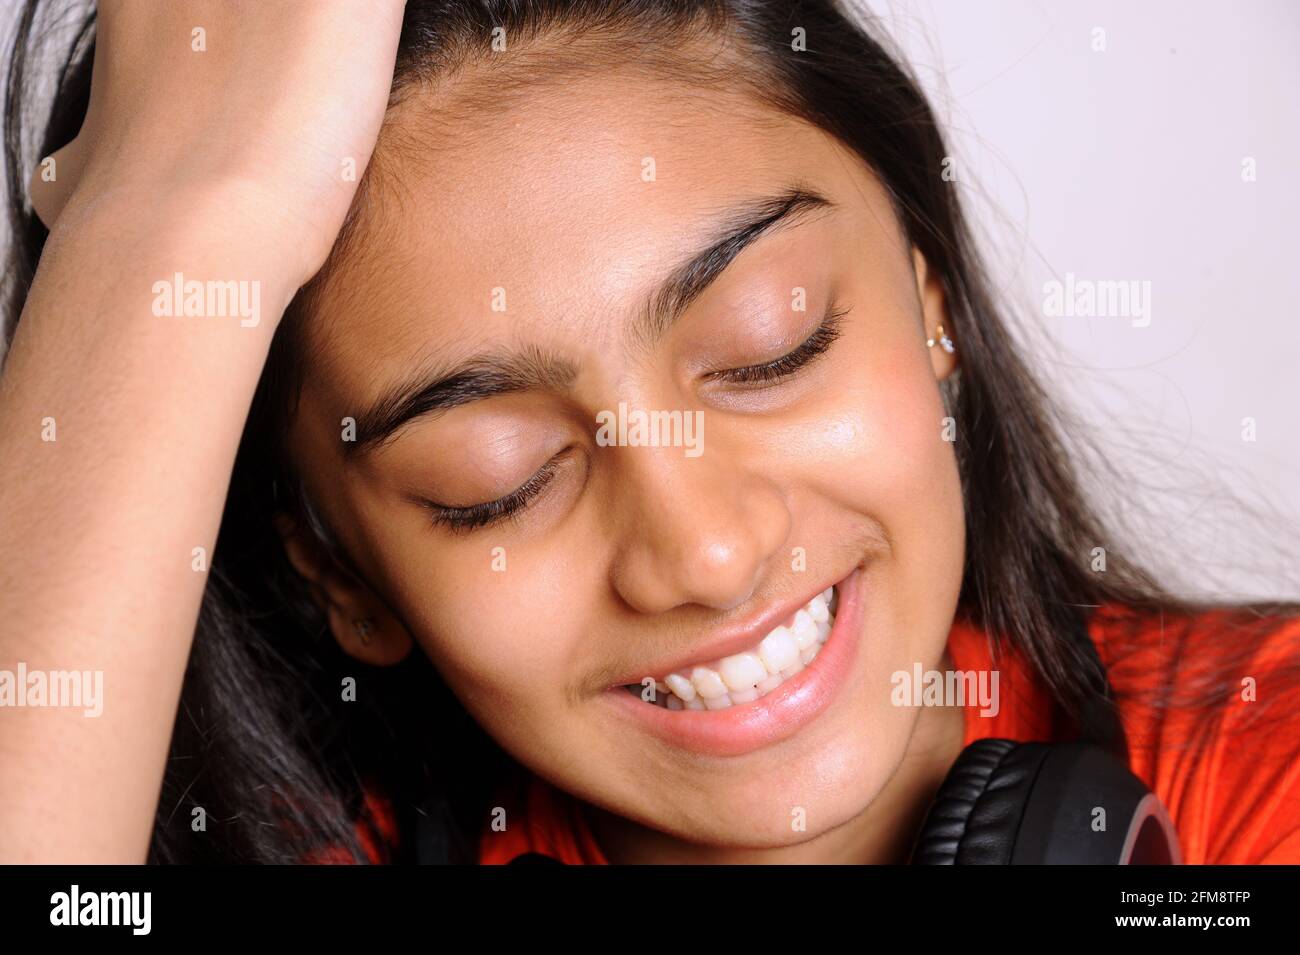 Mumbai Maharashtra India Asia April 25 2021 Portrait of lovely indian girl teenager 14 years old smiling on light background Stock Photo